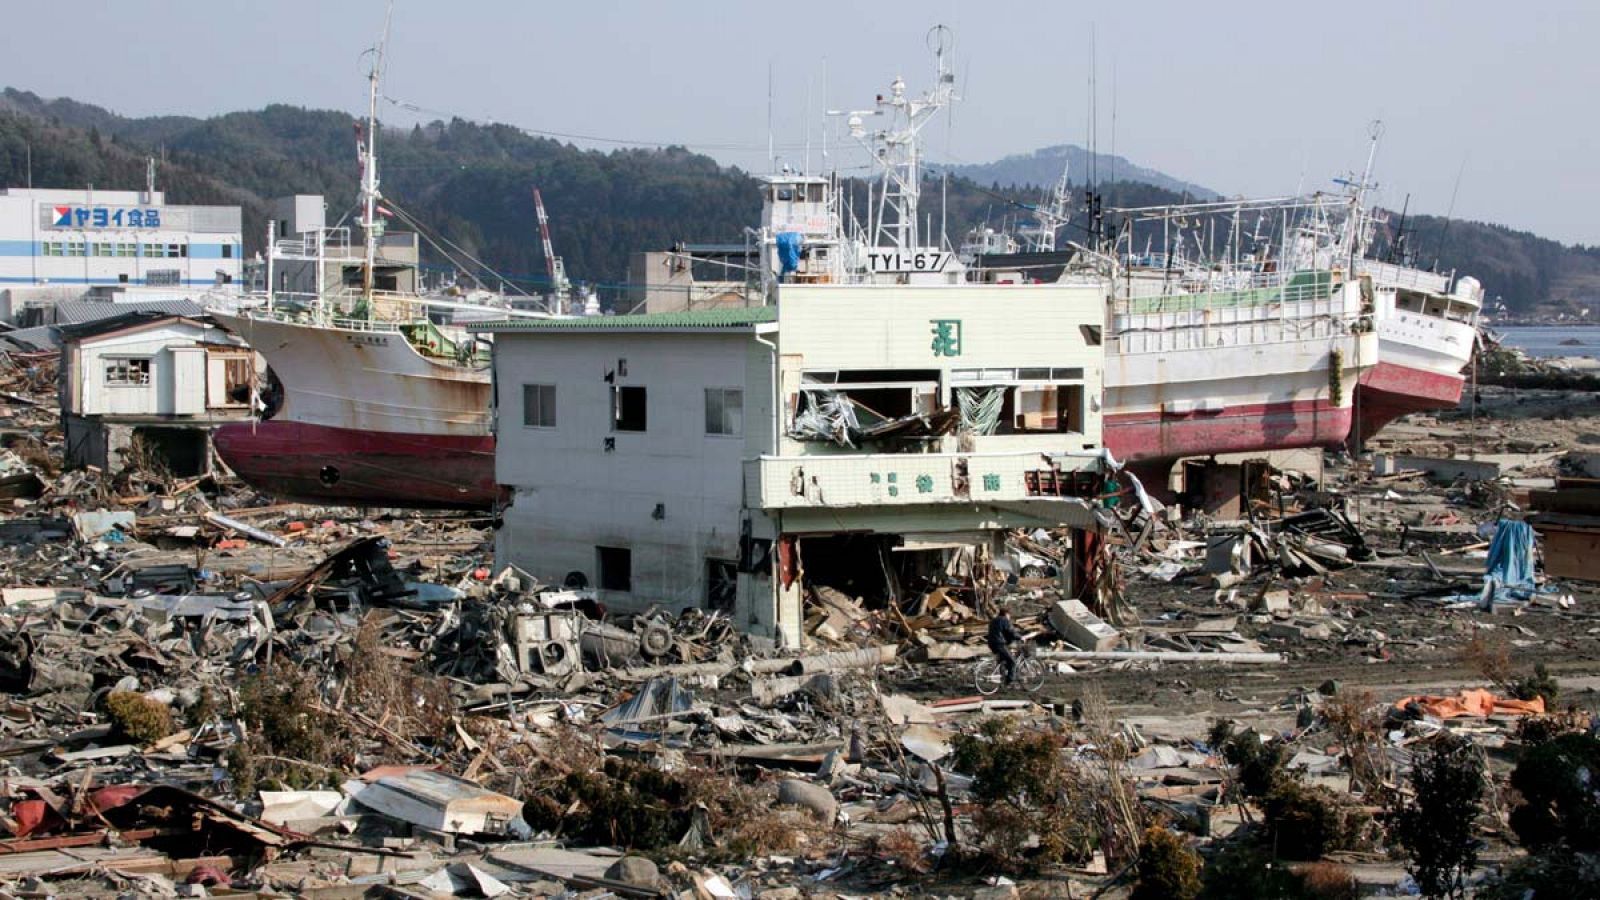 Vista de varios barcos de pesca varados en tierra y una tienda de algas marinas destruida en una zona arrasada por el tsunami en Kesennuma (Japón), en marzo de 2011.